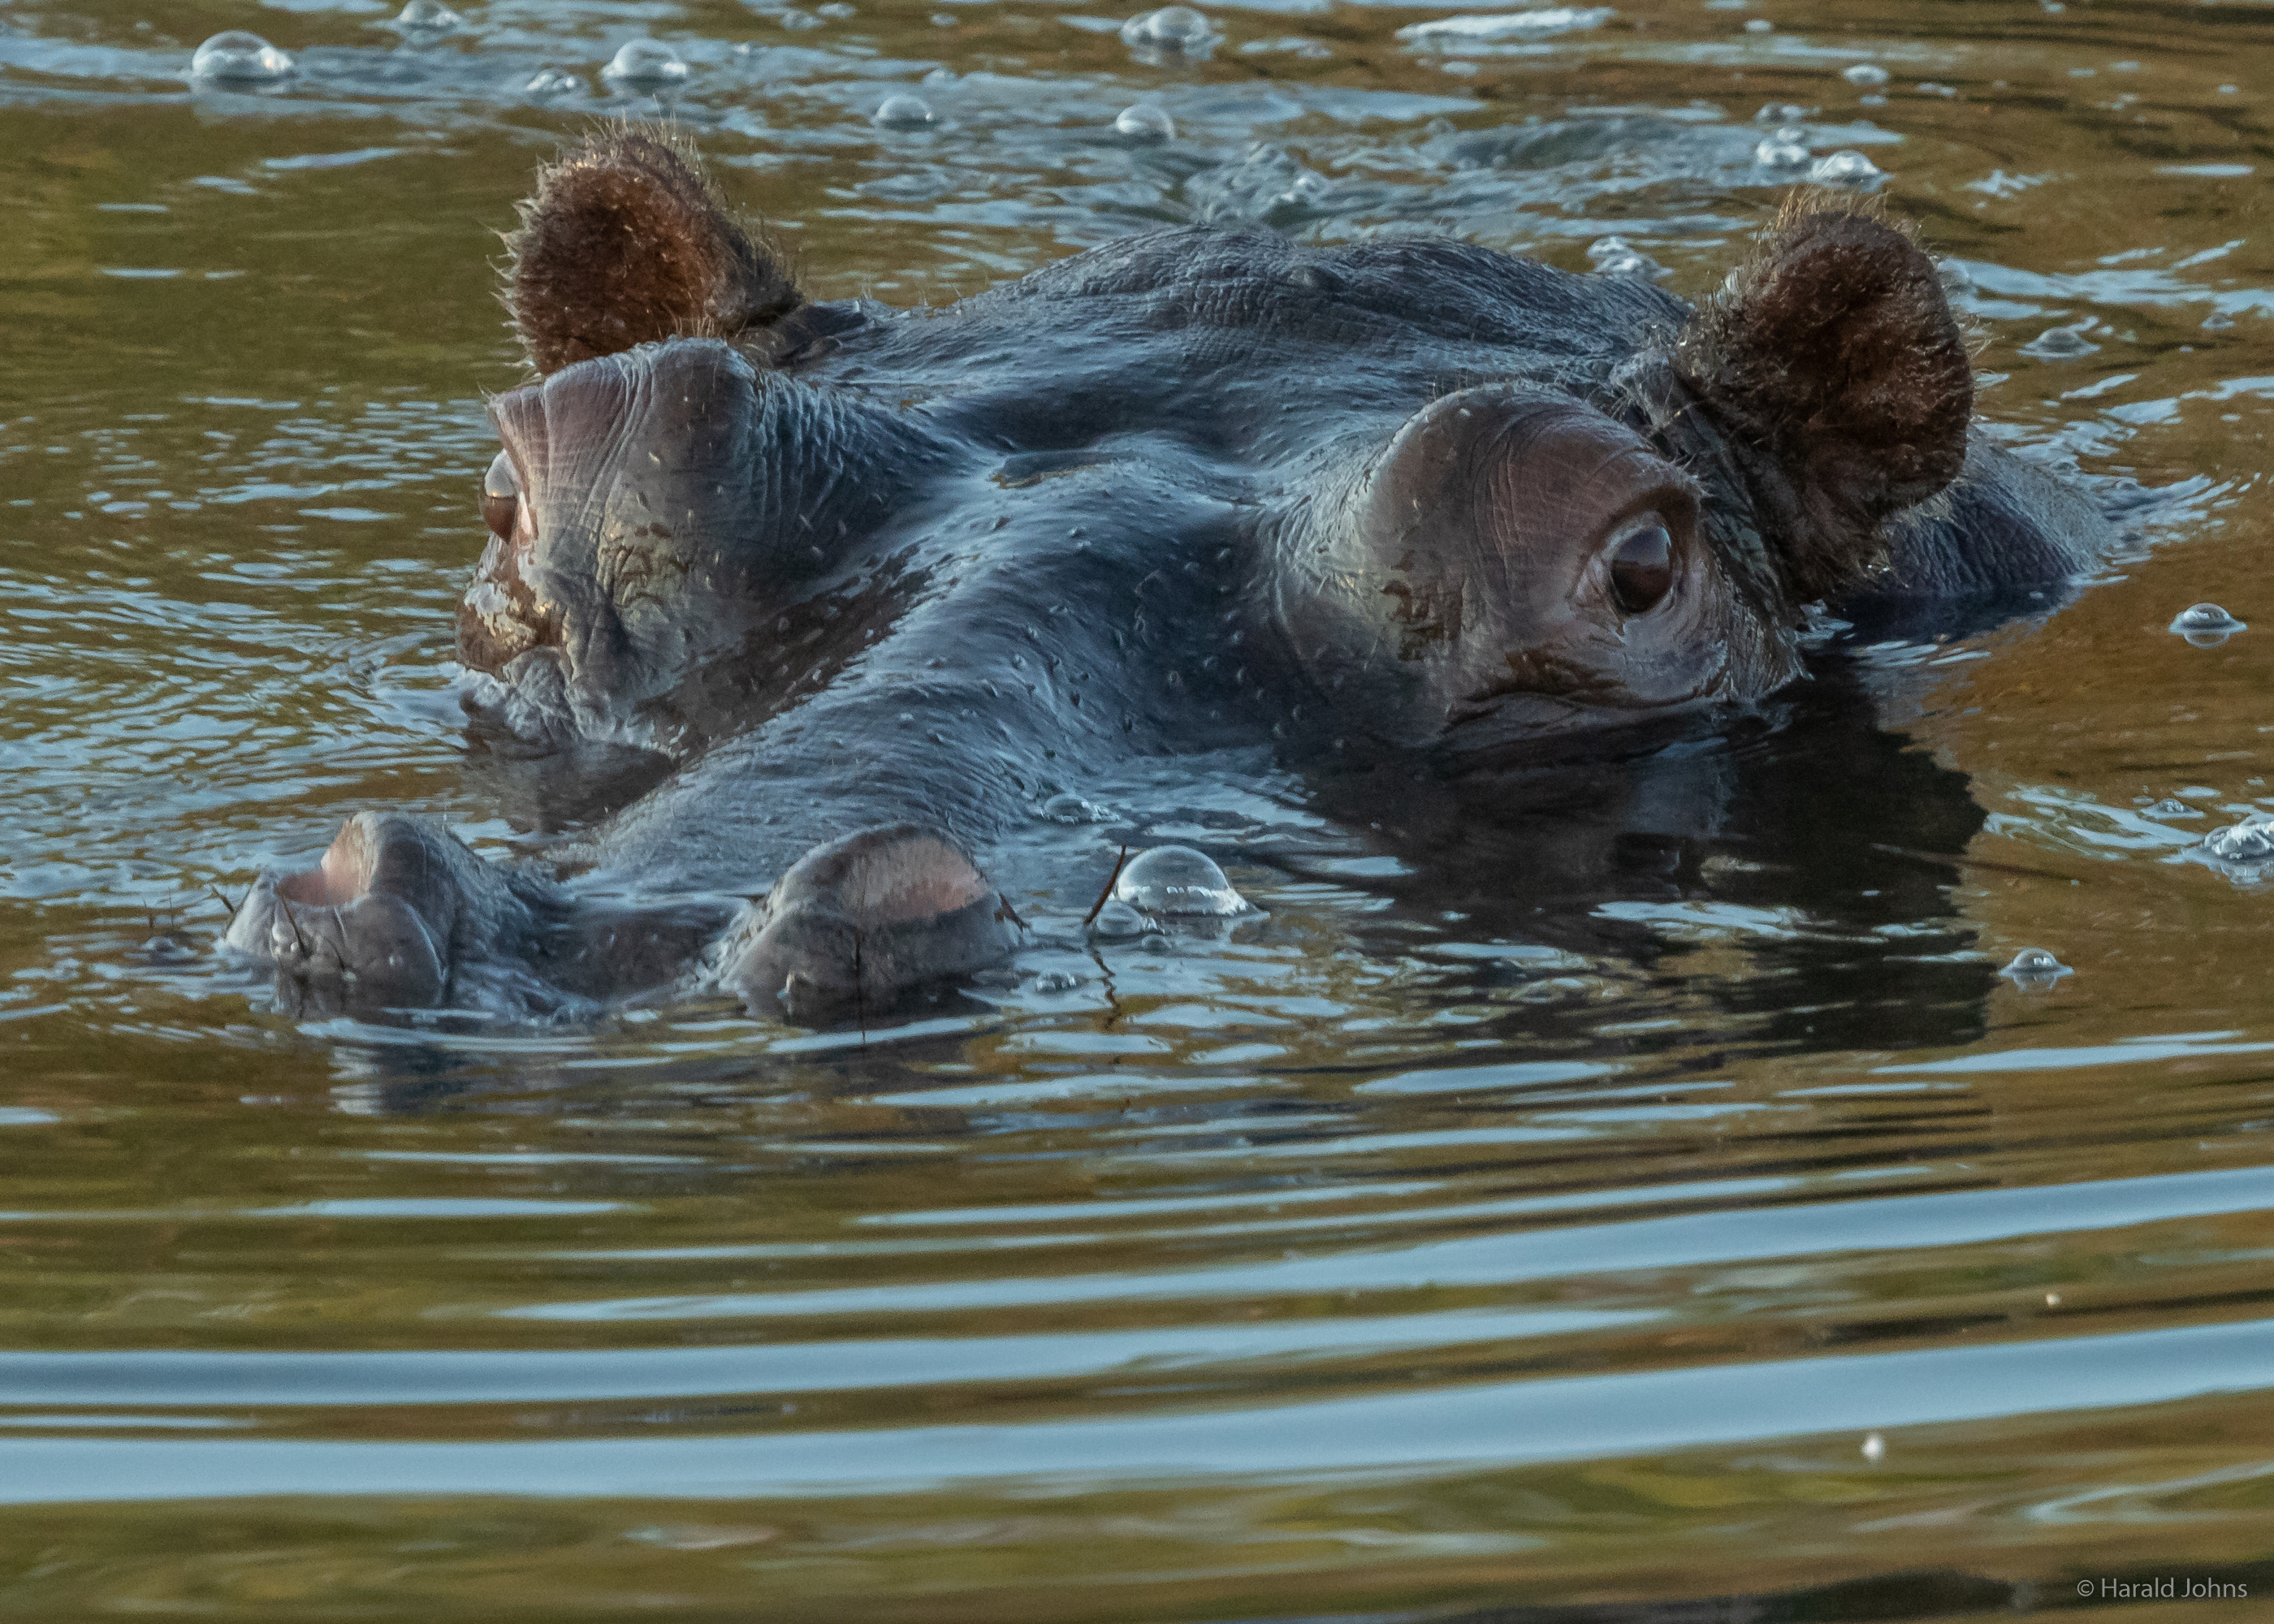 Hippo - Pflusspferd (Hippopotamus) steigt auf und holt Luft.